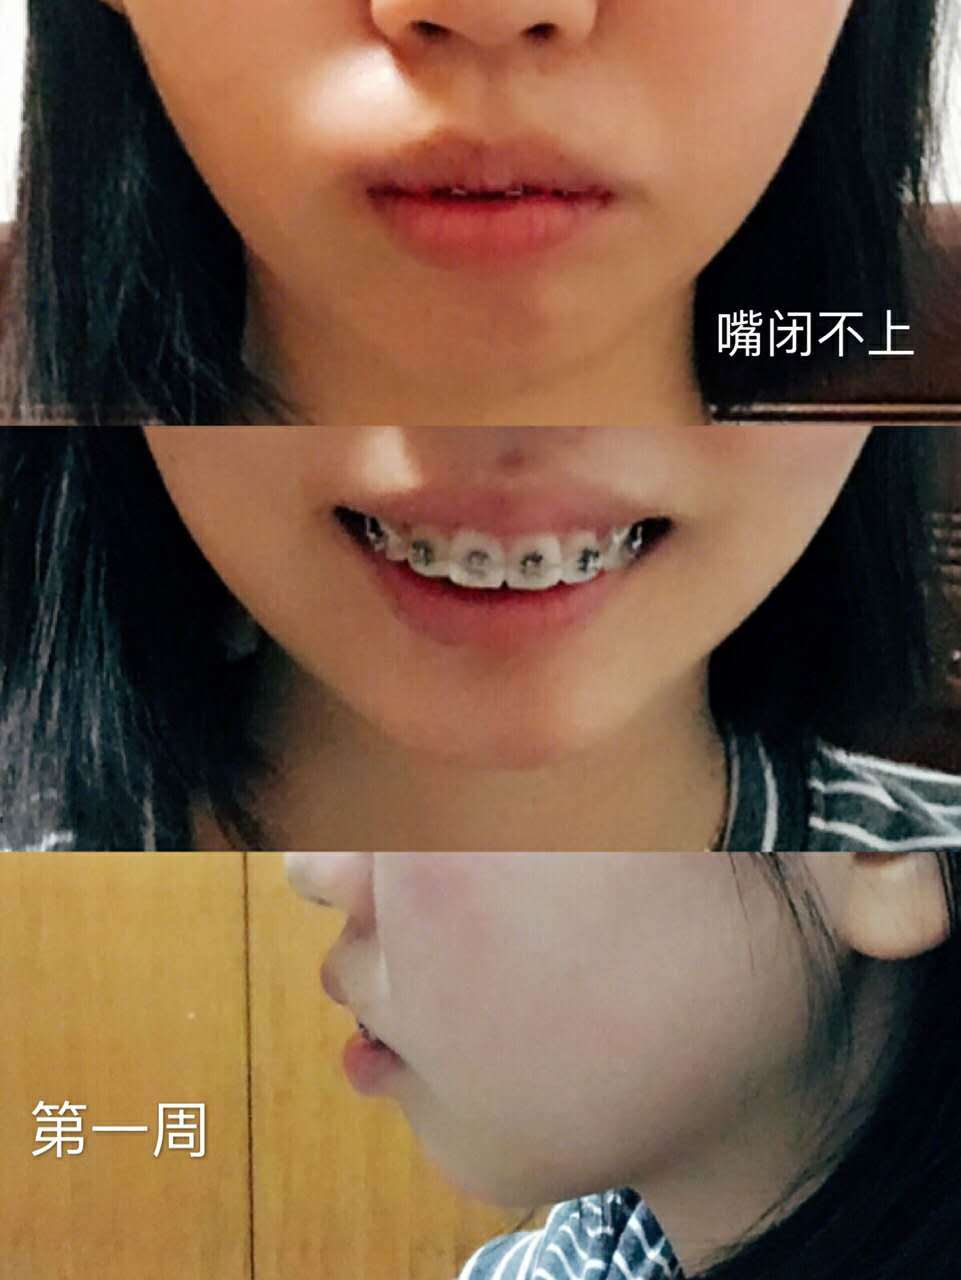 牙齿矫正两年,骨性深覆合,阶段详细对比图.